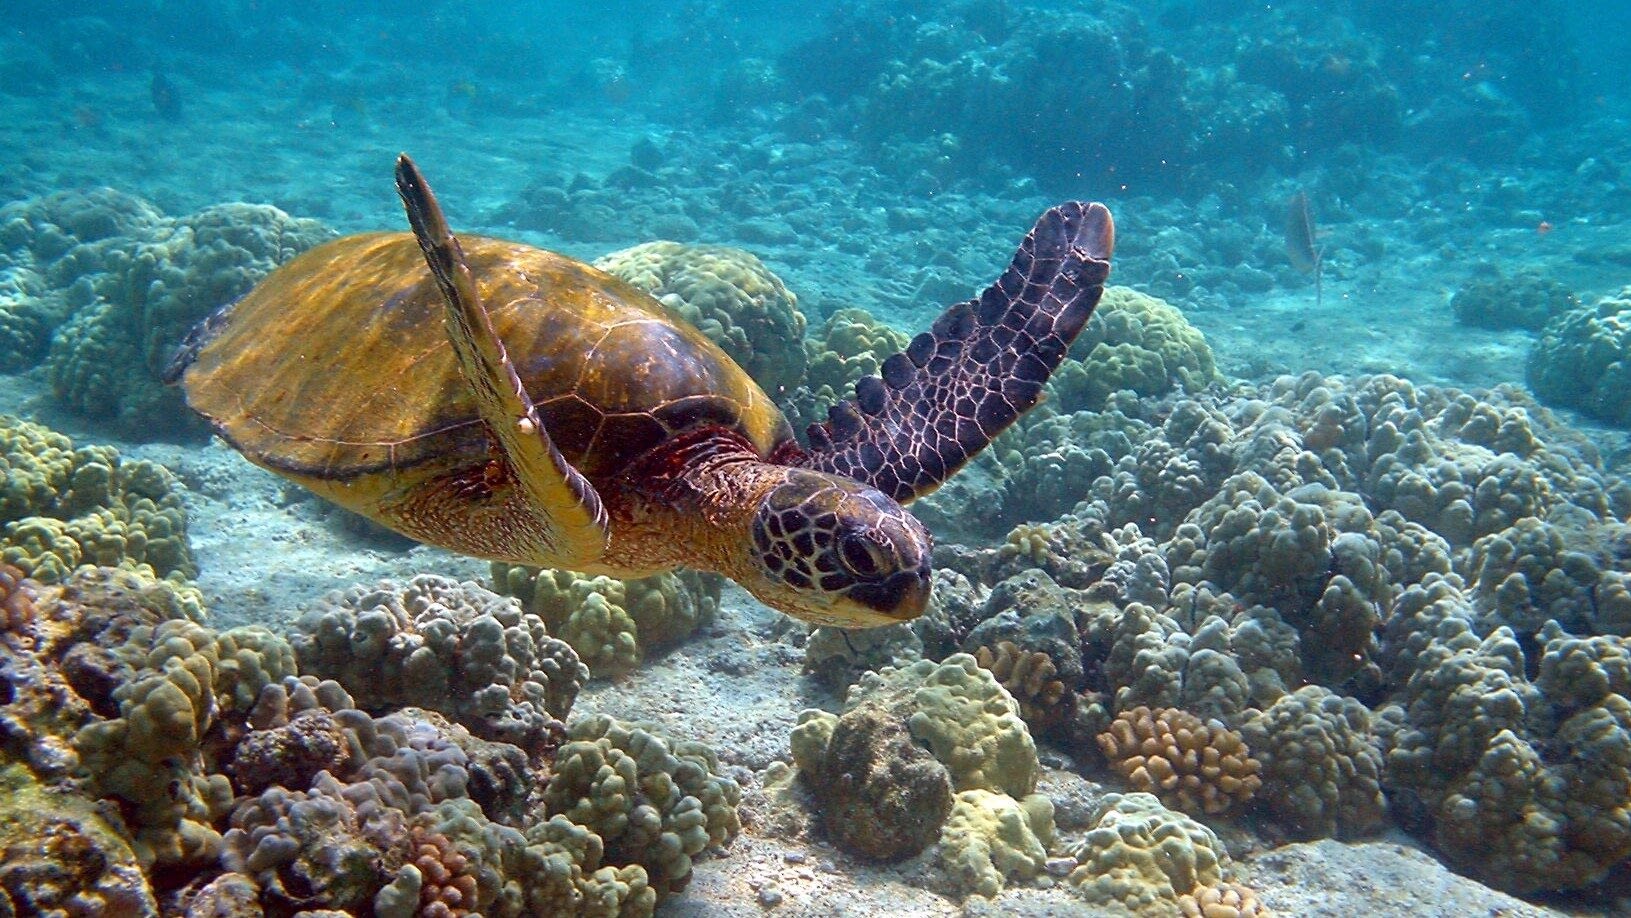 Image: Green sea turtle swimming